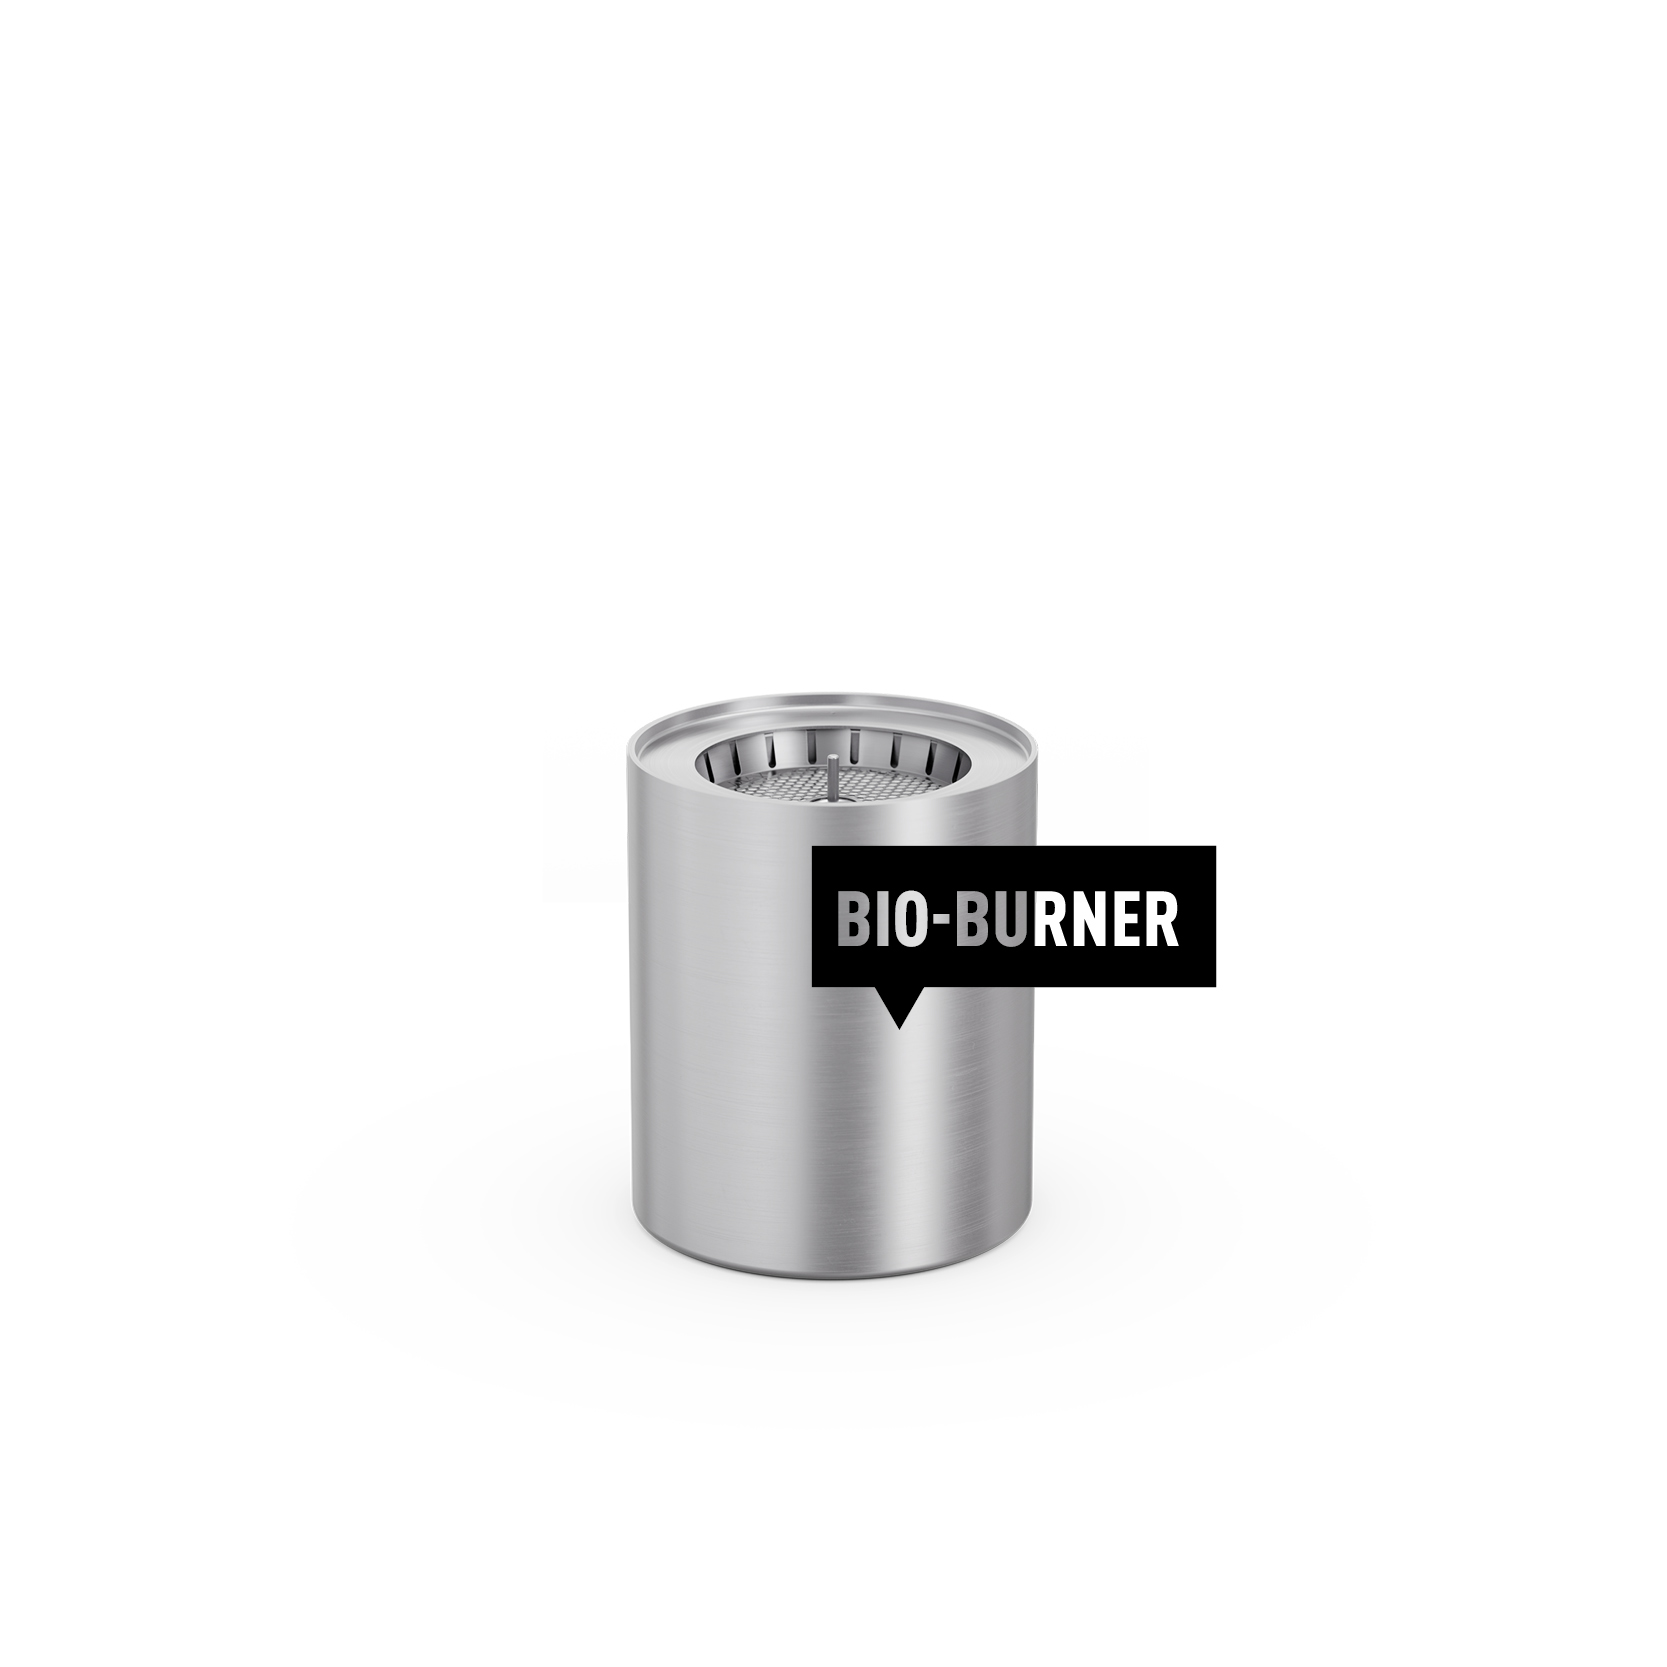 Acheter le Kit Evolution Bio-Burner Spin 900, Höfats